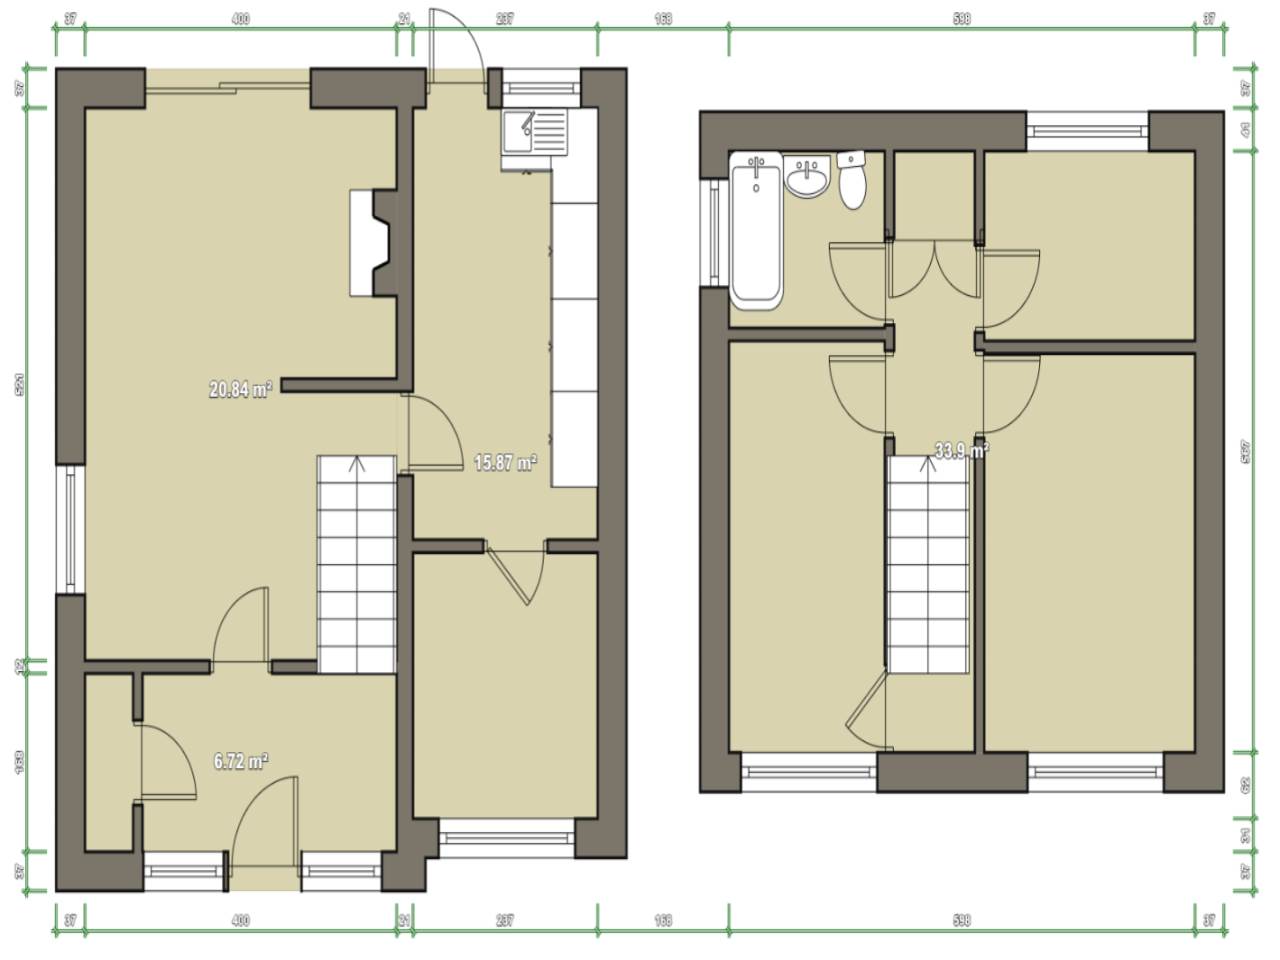 3 bed semi-detached house for sale in Maesteg, Pentre Llyn - Property Floorplan